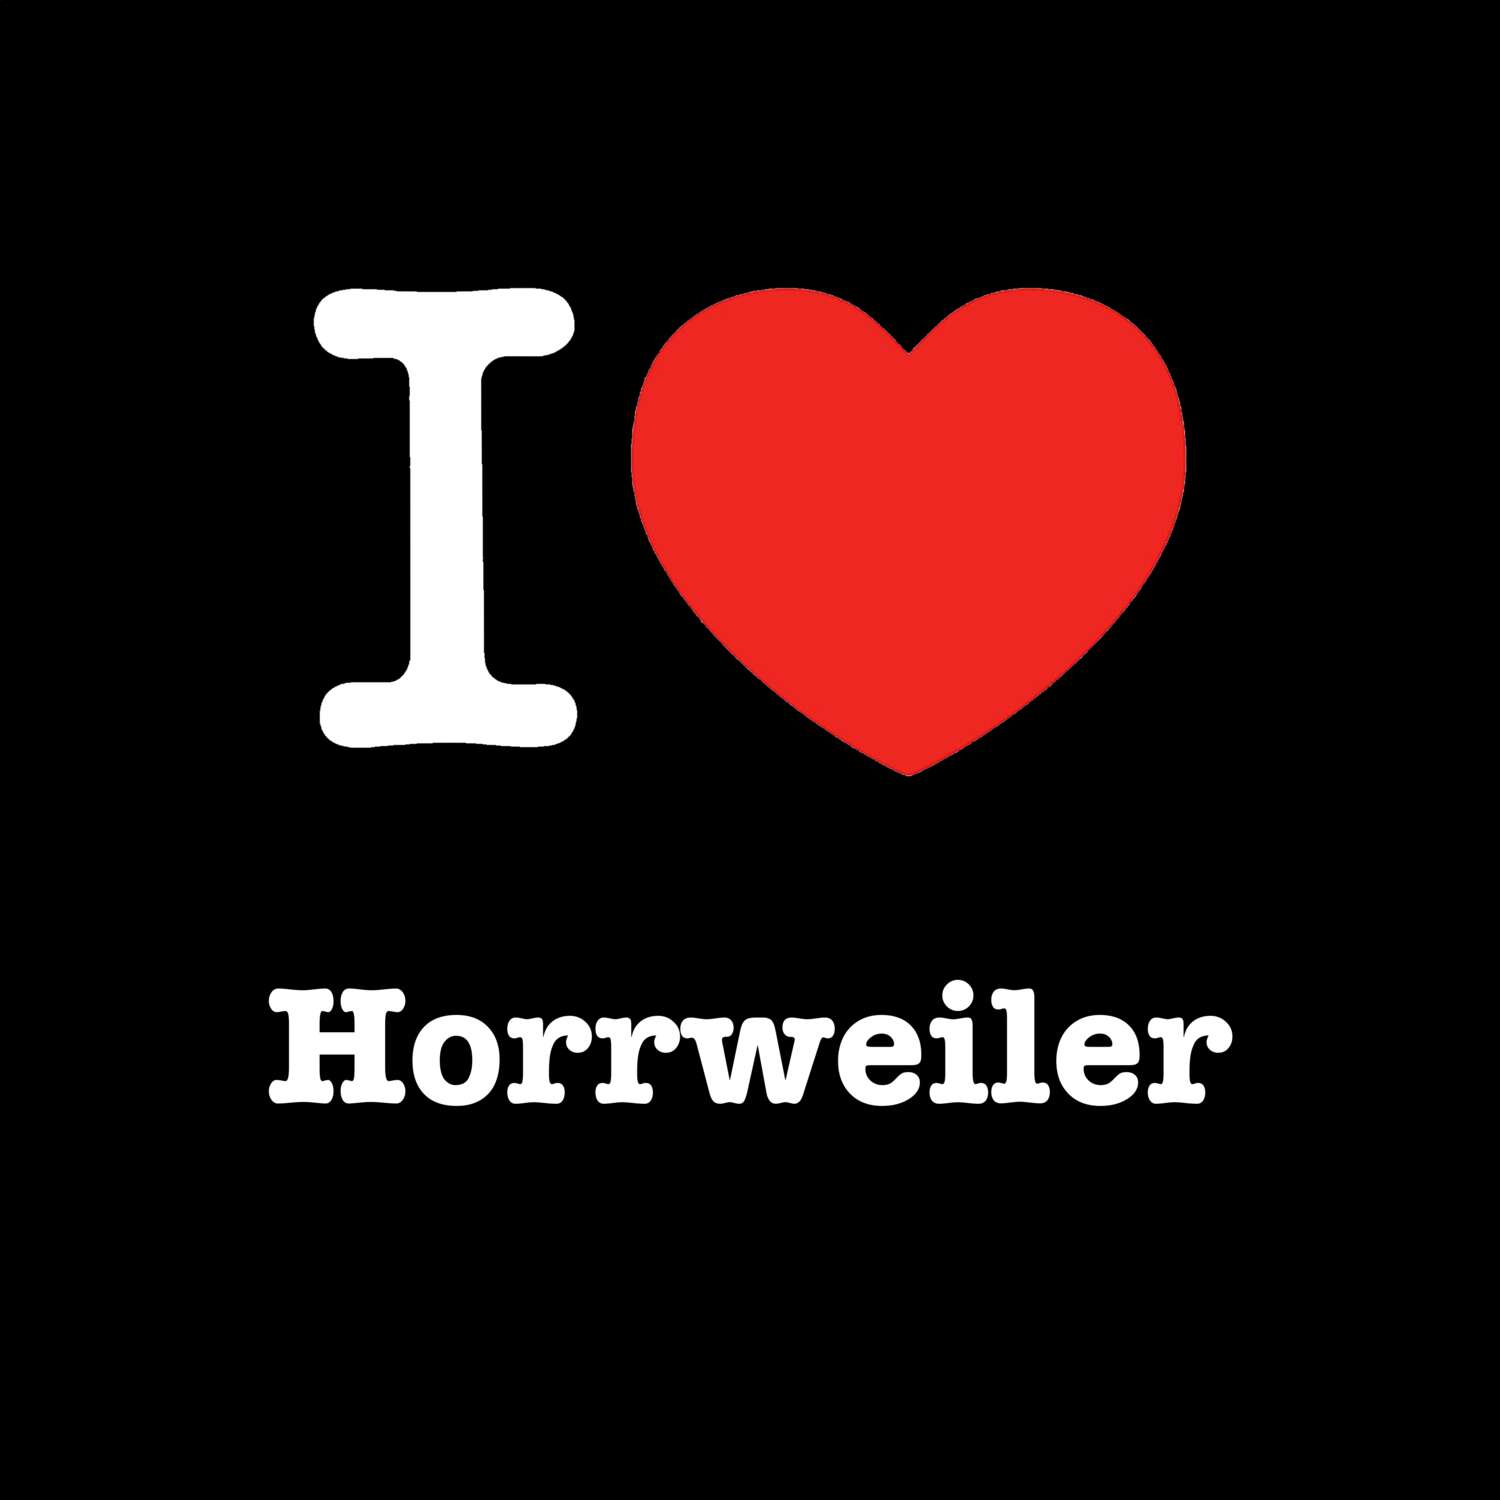 Horrweiler T-Shirt »I love«